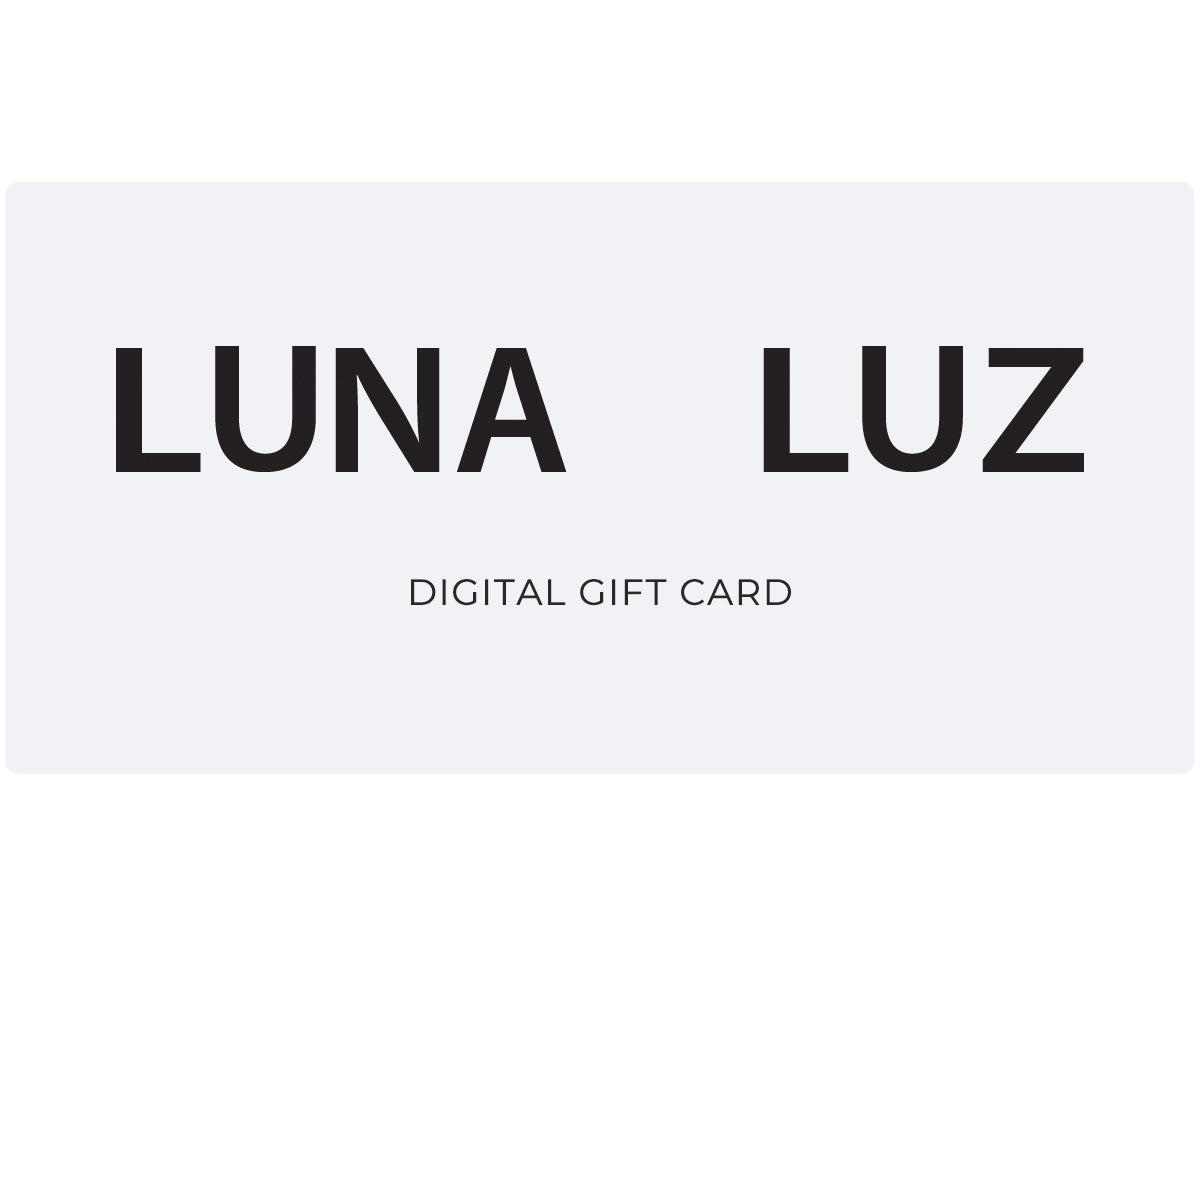 Luna Luz Digital Gift Card